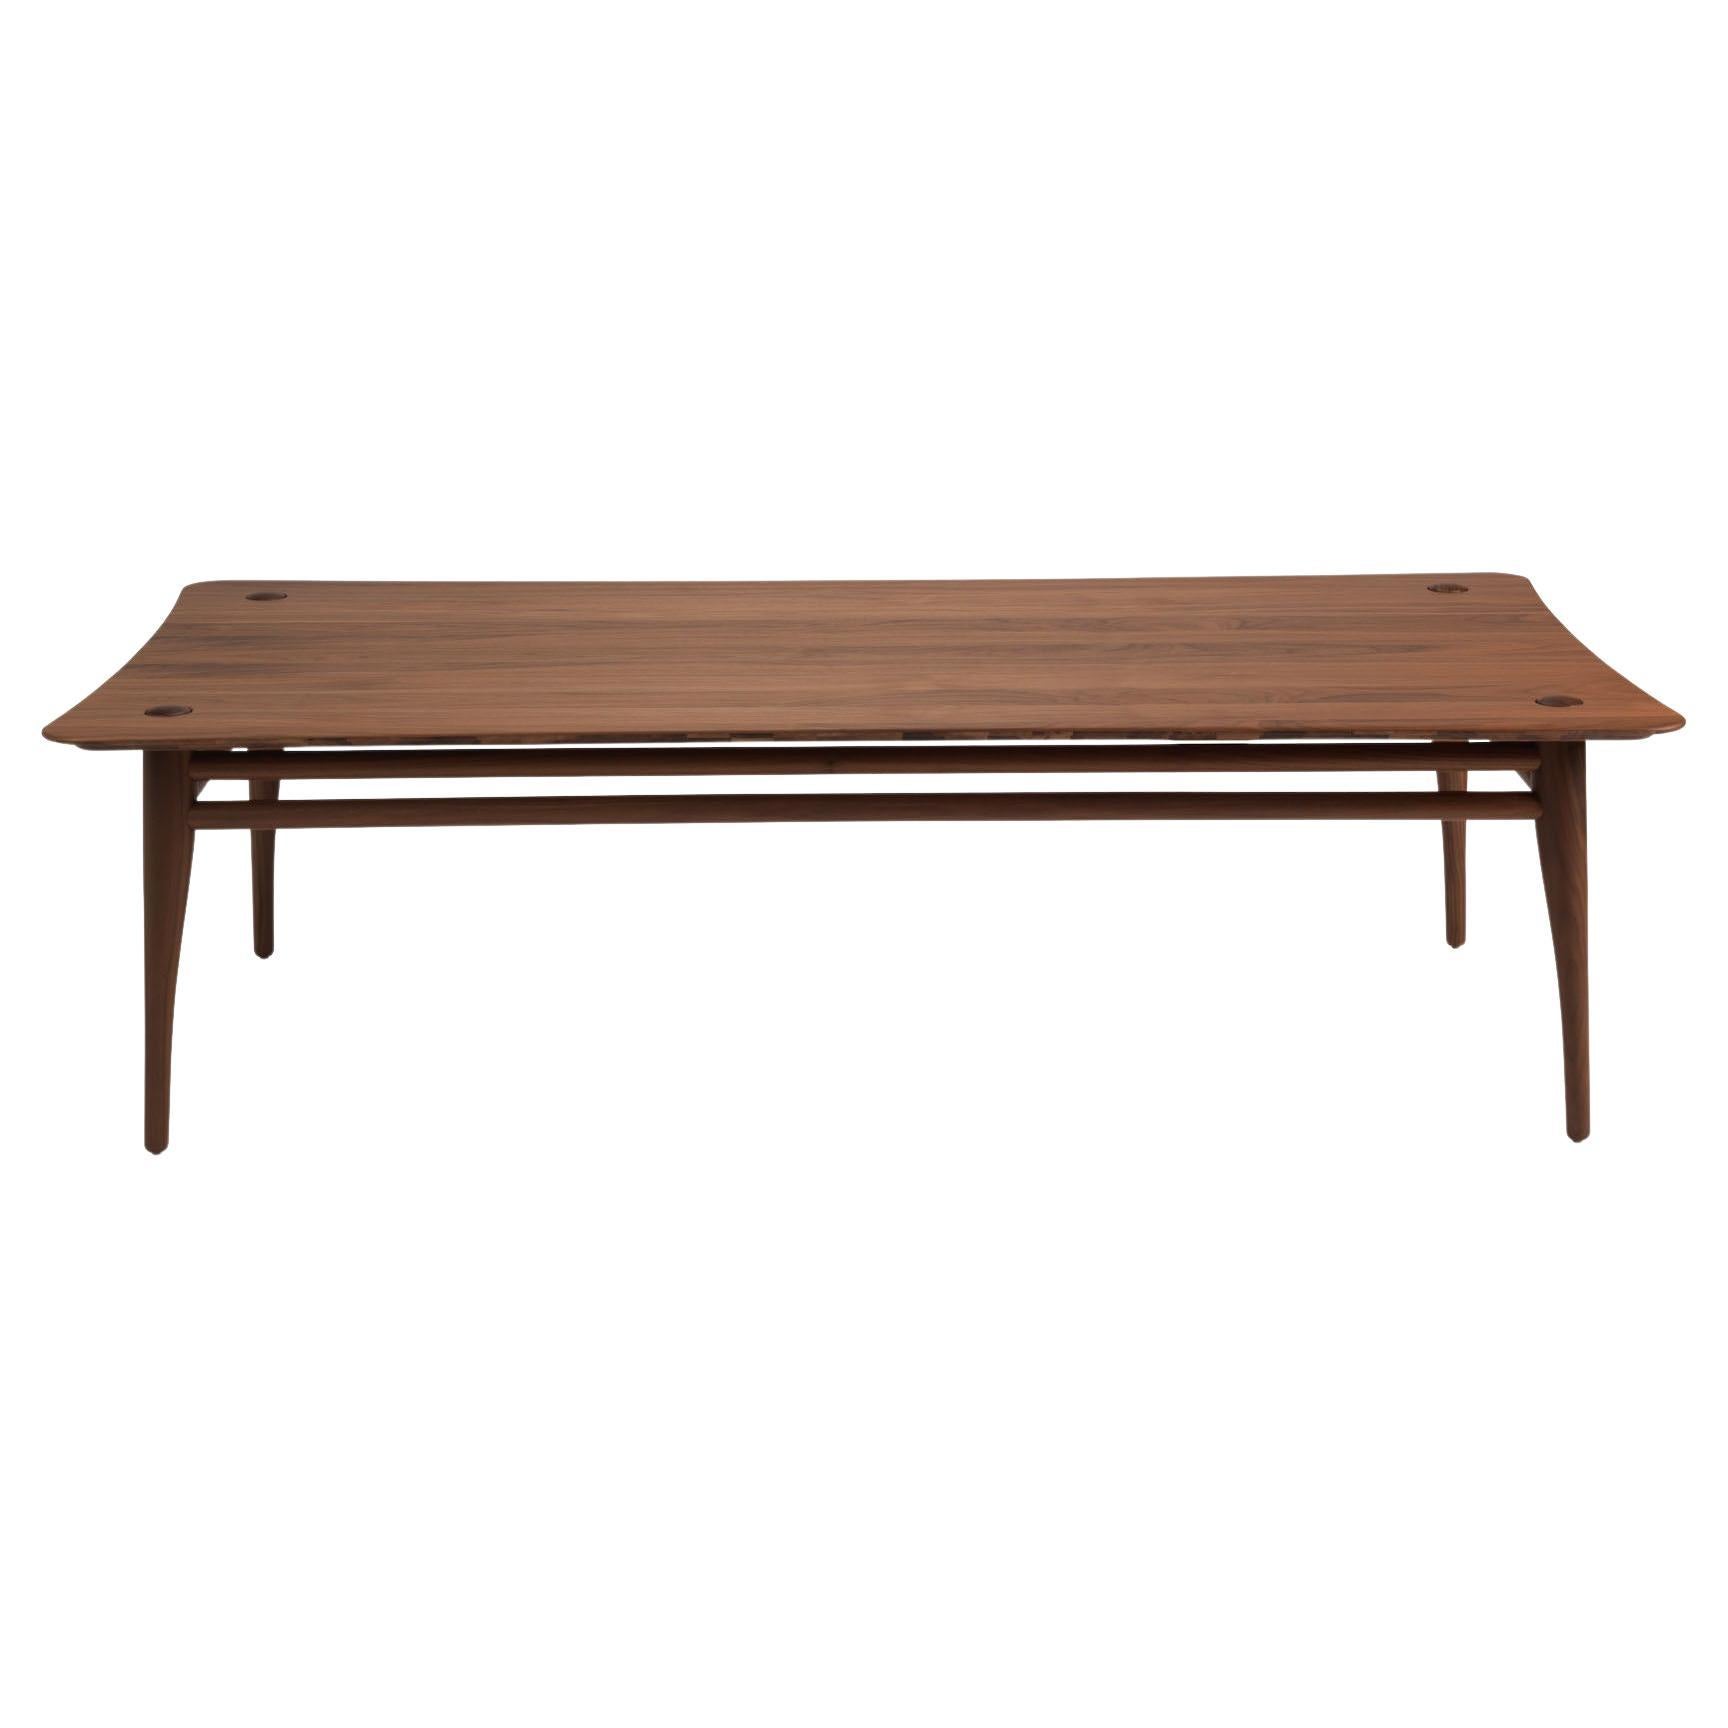 Revised Chilgrove - table basse en noyer massif - rectangle 160x80cm